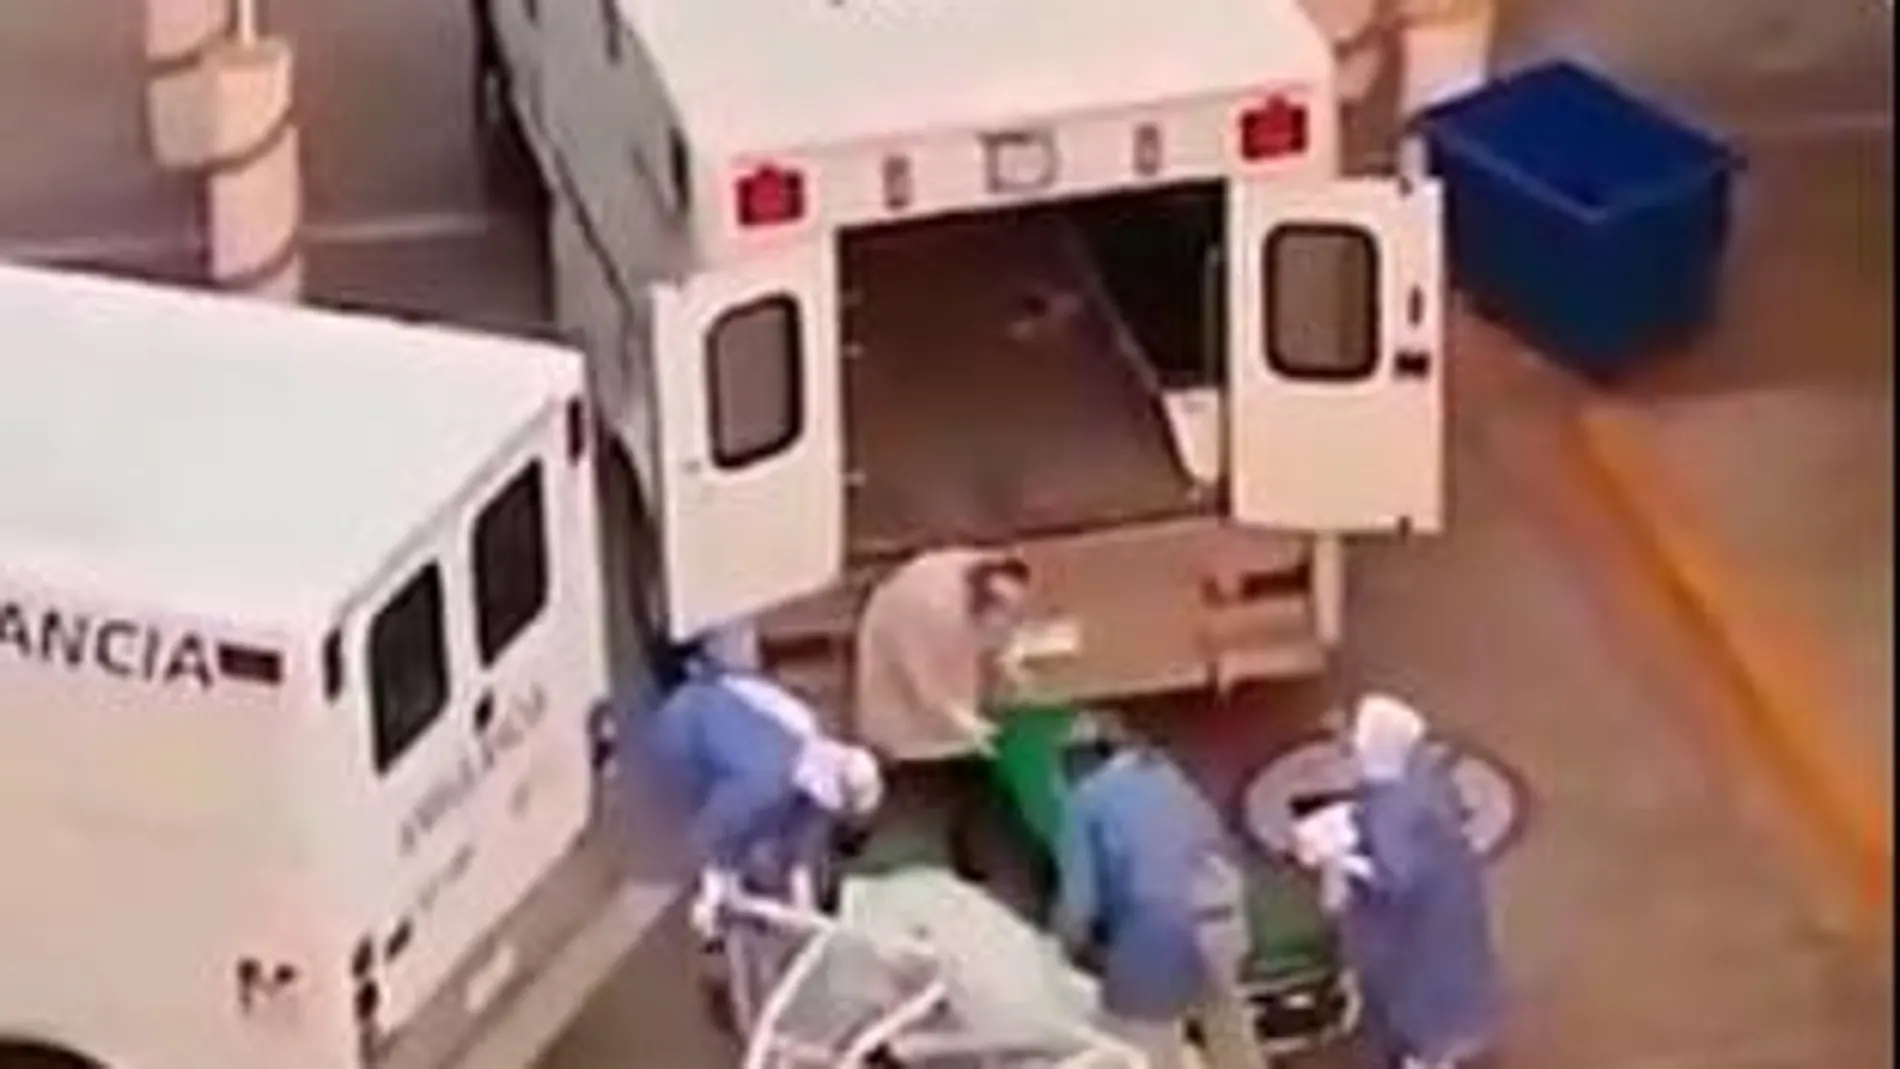 Momento en el que el paciente yace tirado en el suelo y los sanitarios tratan de devolverle a la camilla para subirlo a la ambulancia